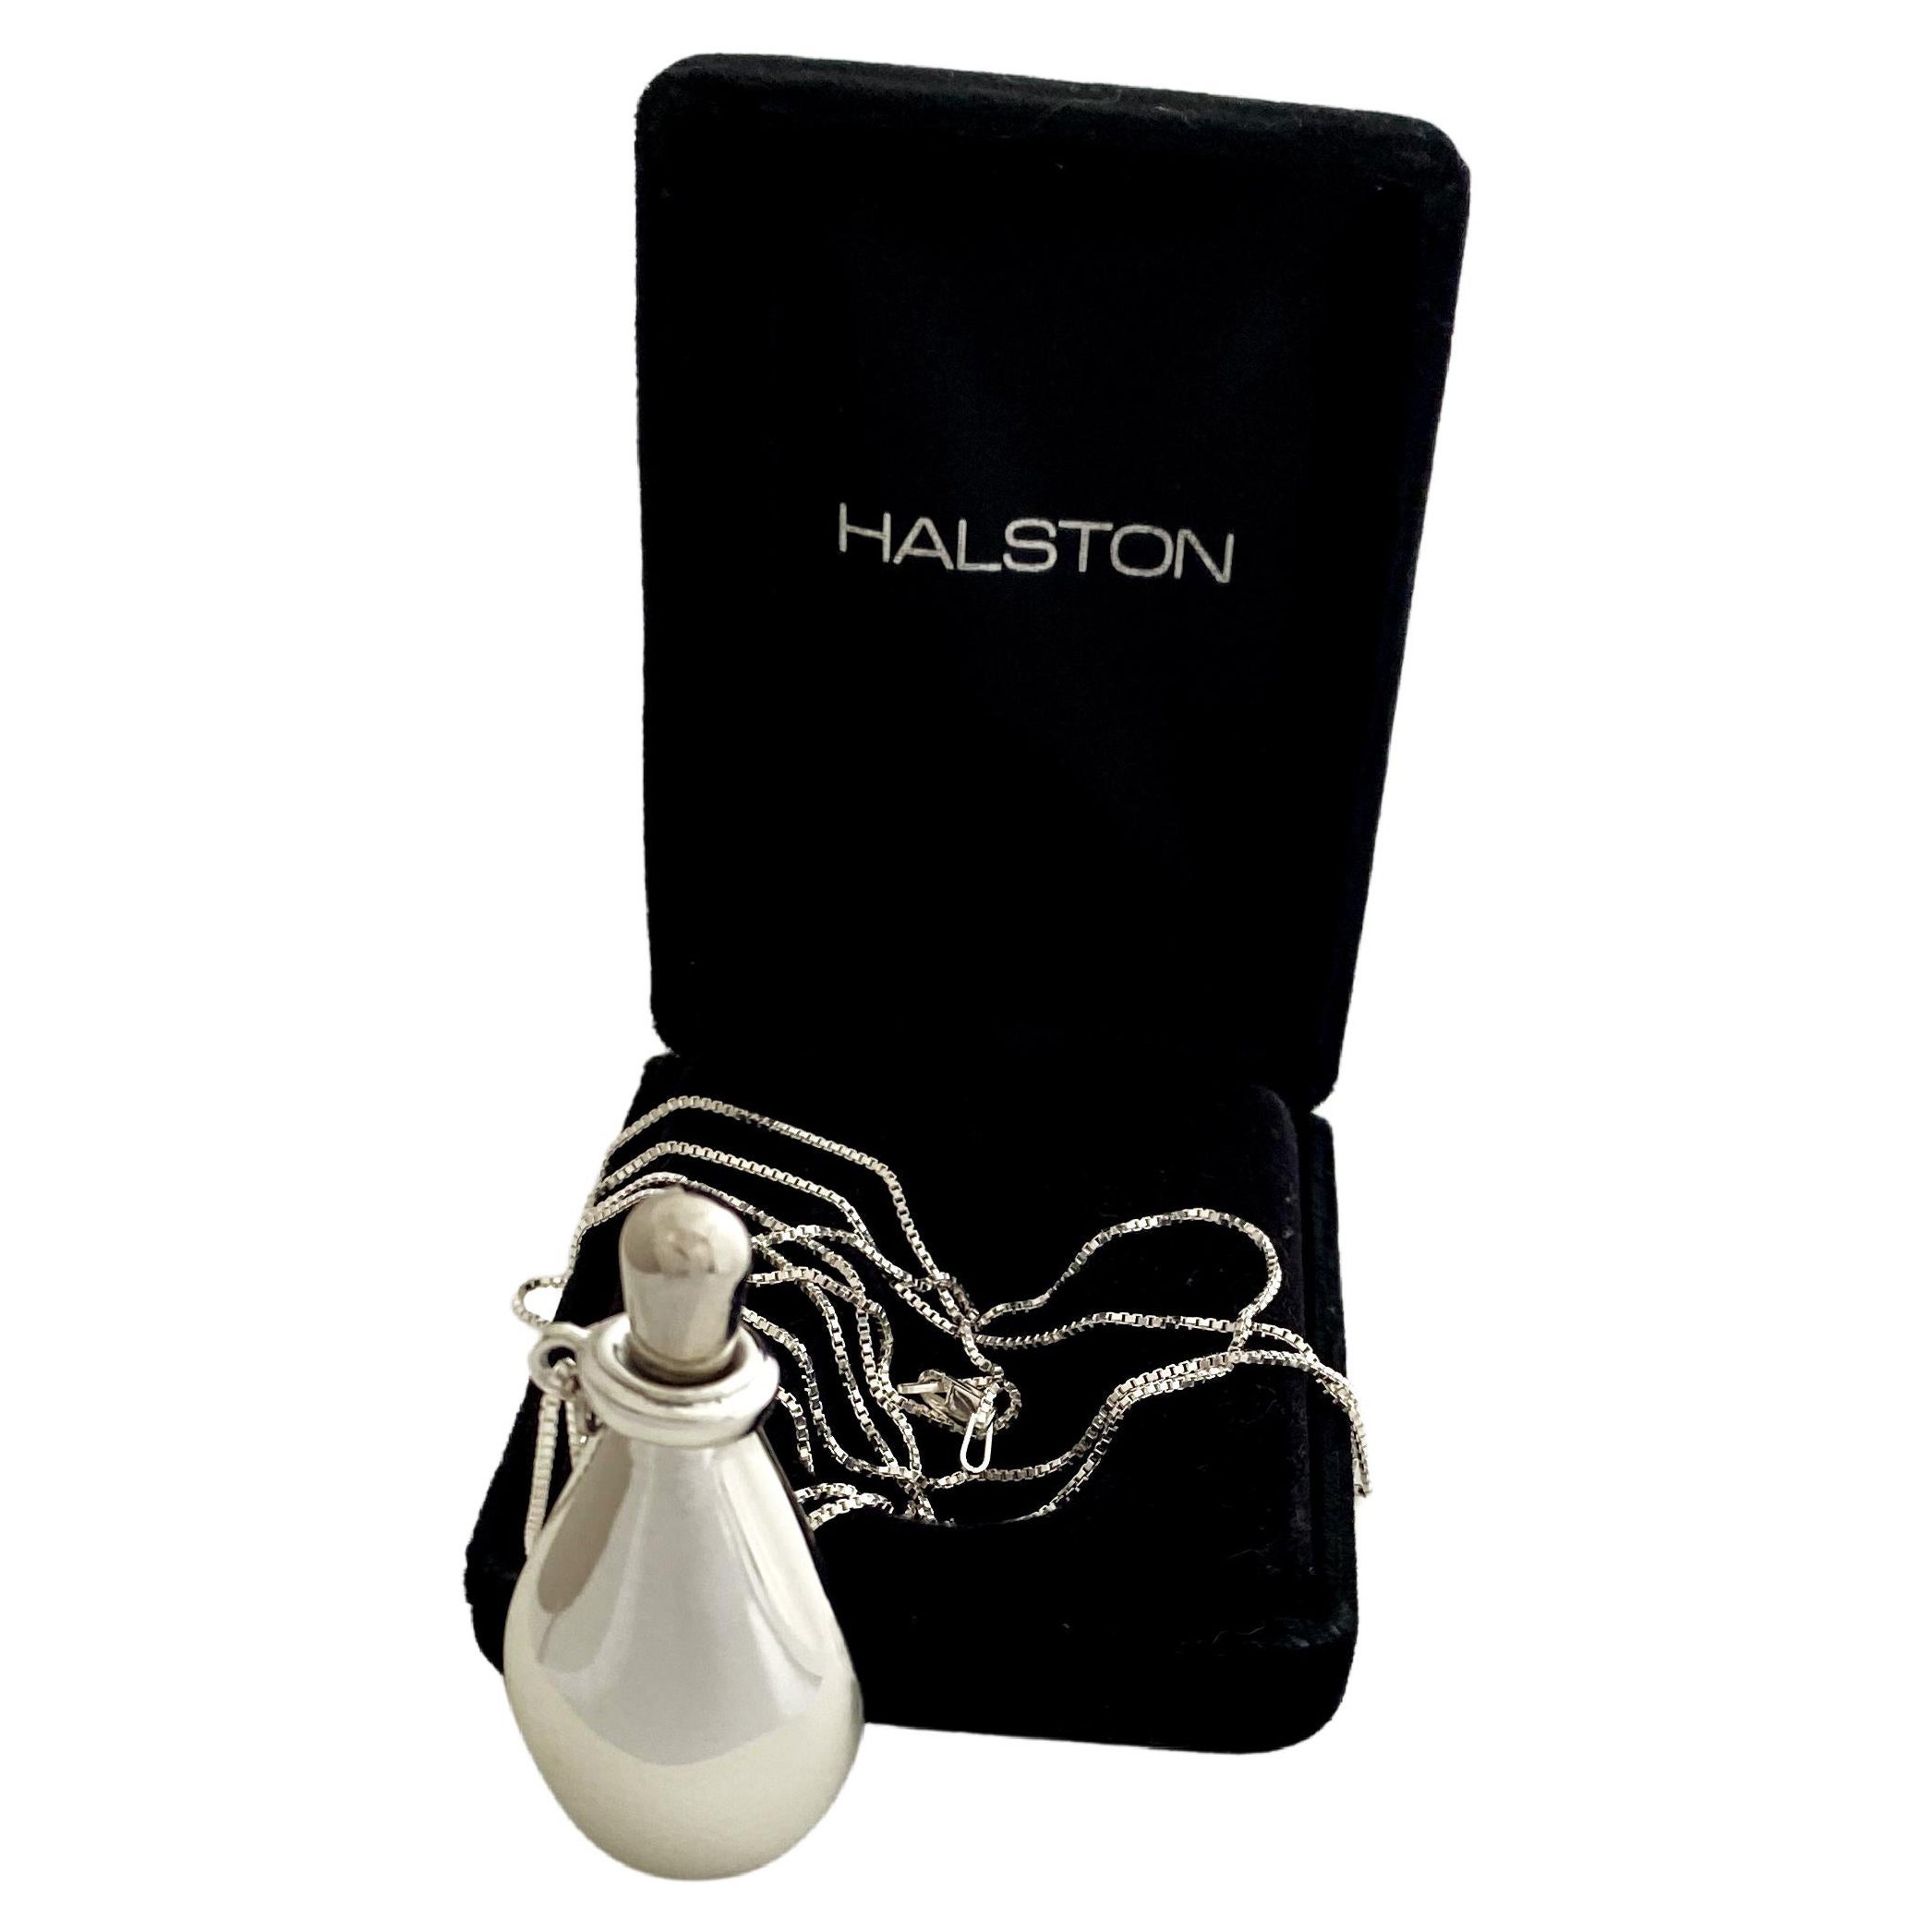 No-Scuff Elsa Peretti for Halston Perfume Bottle Pendant Necklace Sterling Chain